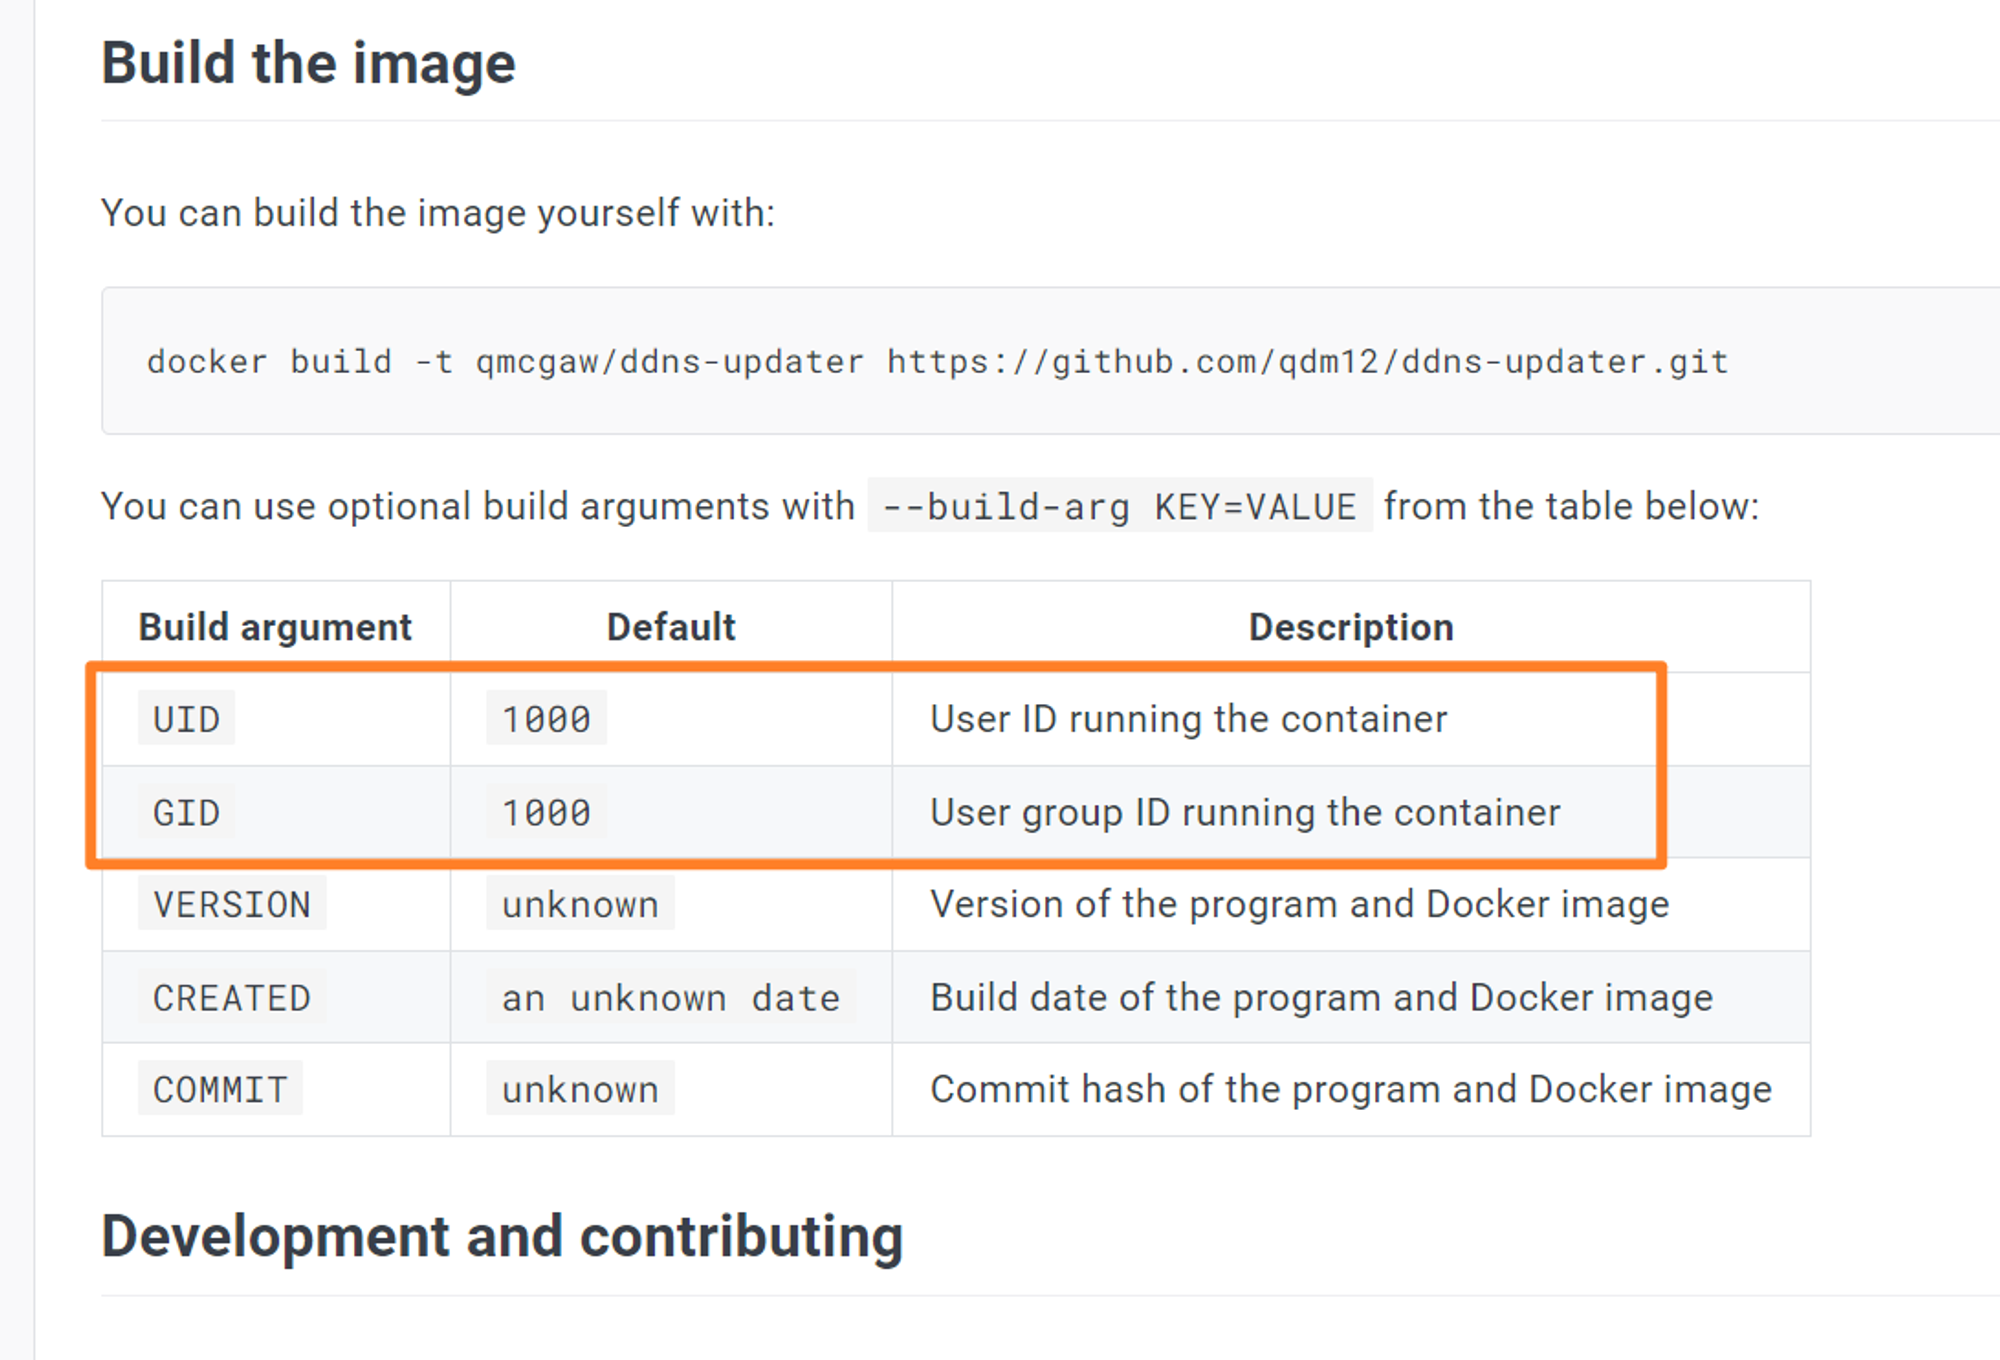 根据其说明，如果你不希望使用 1000 的用户权限，那就得自己另外编译 Docker 镜像并指定其他的用户和用户组 ID。